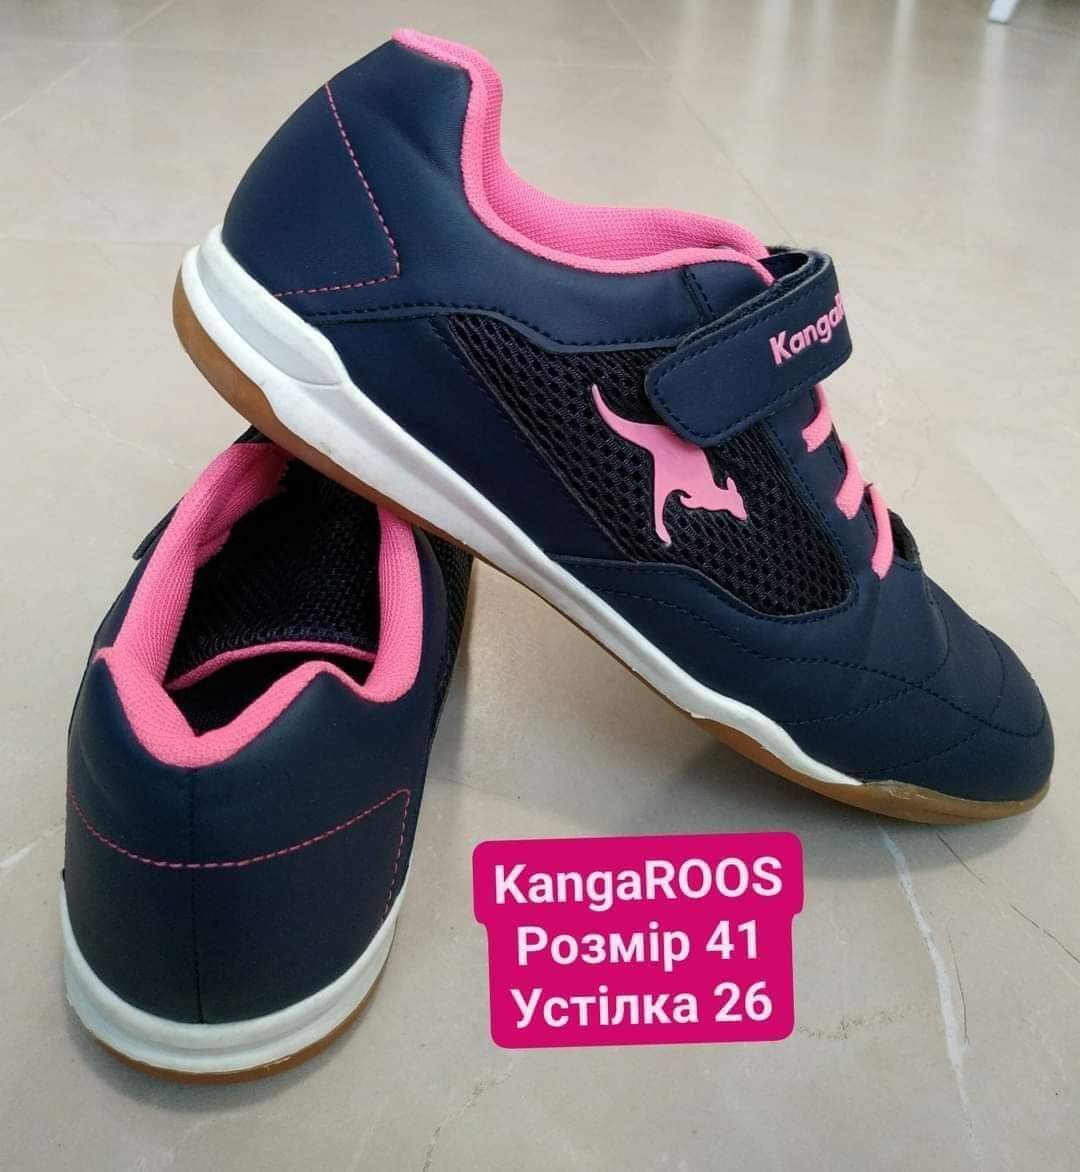 Кроссовки KangaROOS женские обувь женская кросівки жіночі